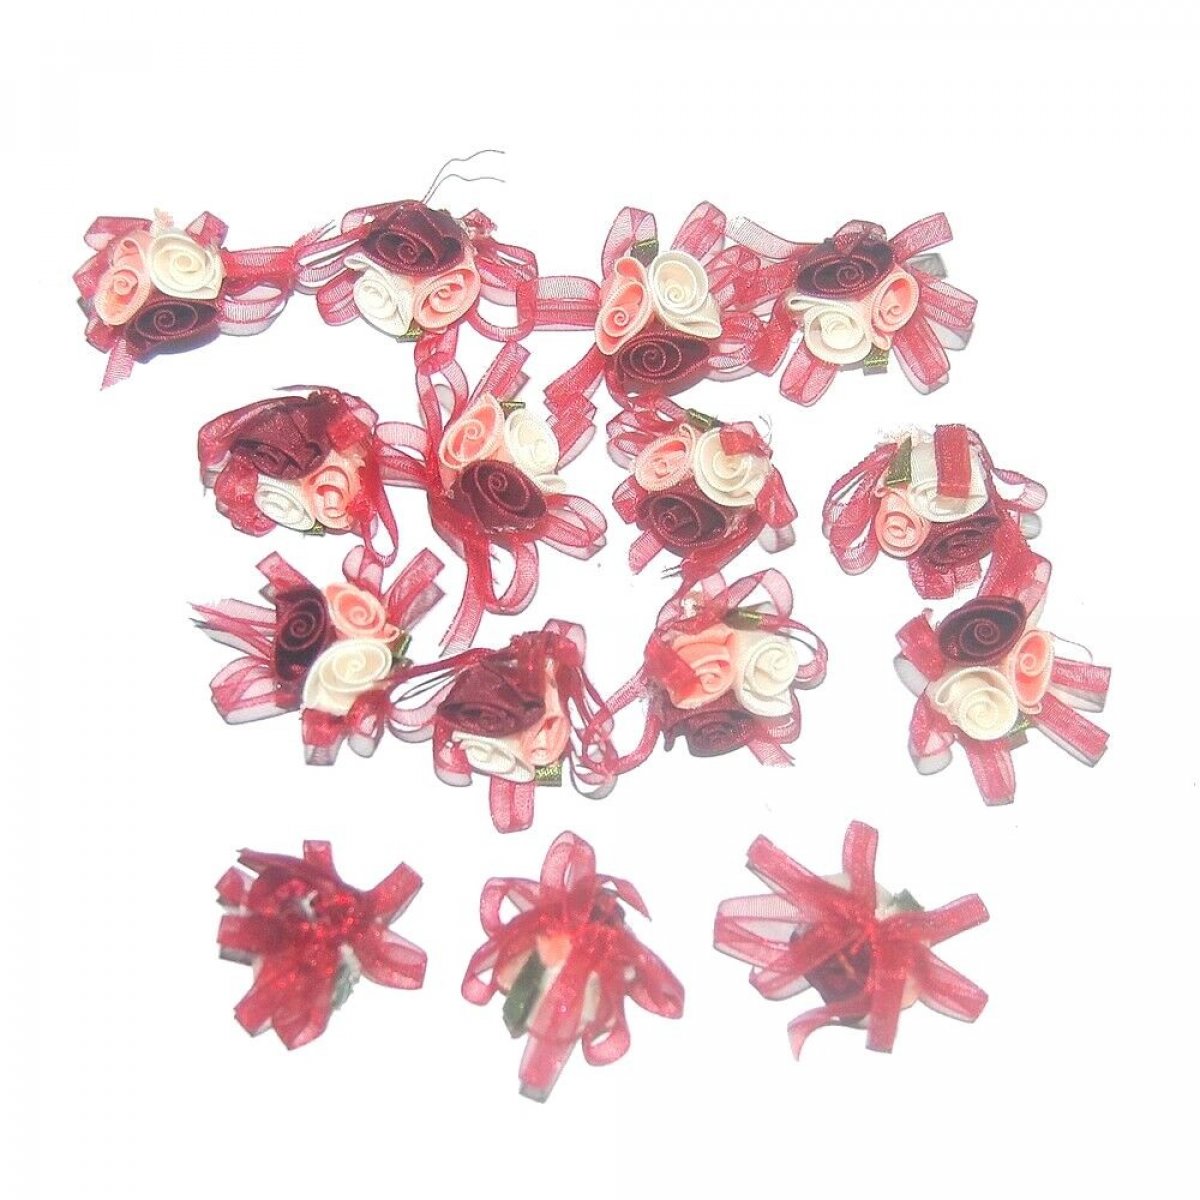 Petites fleurs en satin et organza ivoire rose bordeaux x 15 pièces